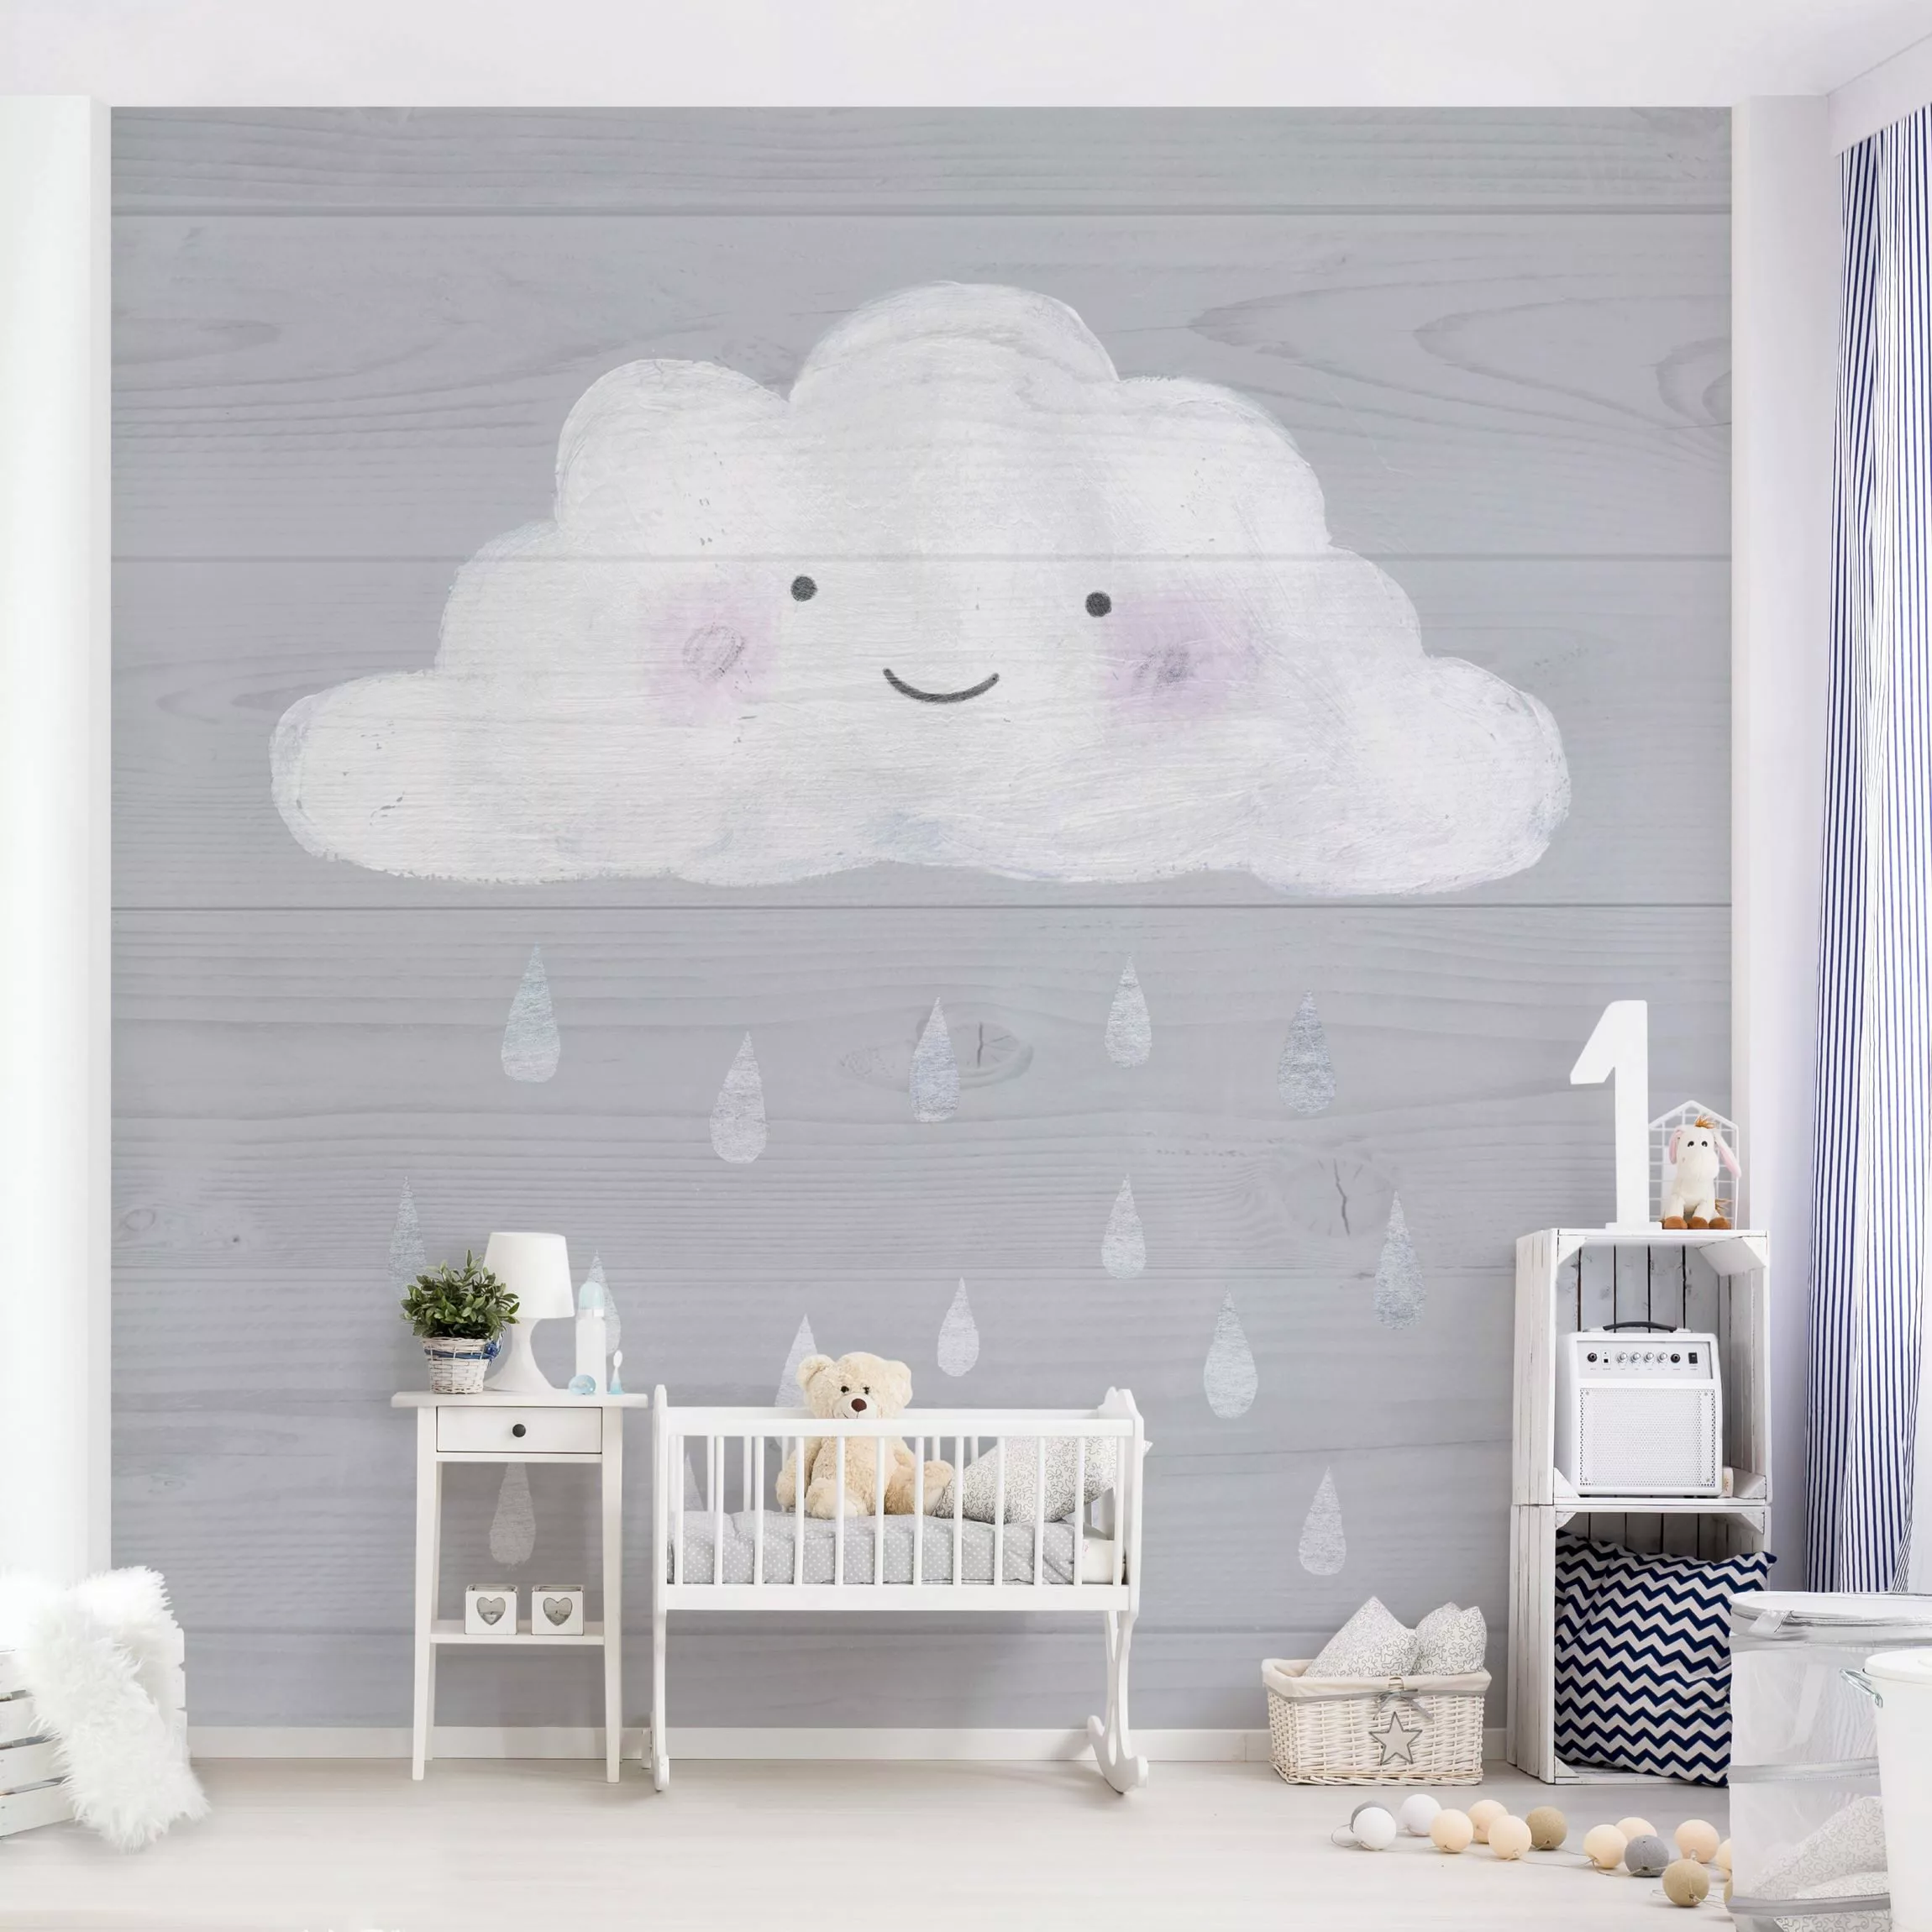 Bilderwelten Kindertapete Wolke mit silbernen Regentropfen Gr. 192 x 192 günstig online kaufen